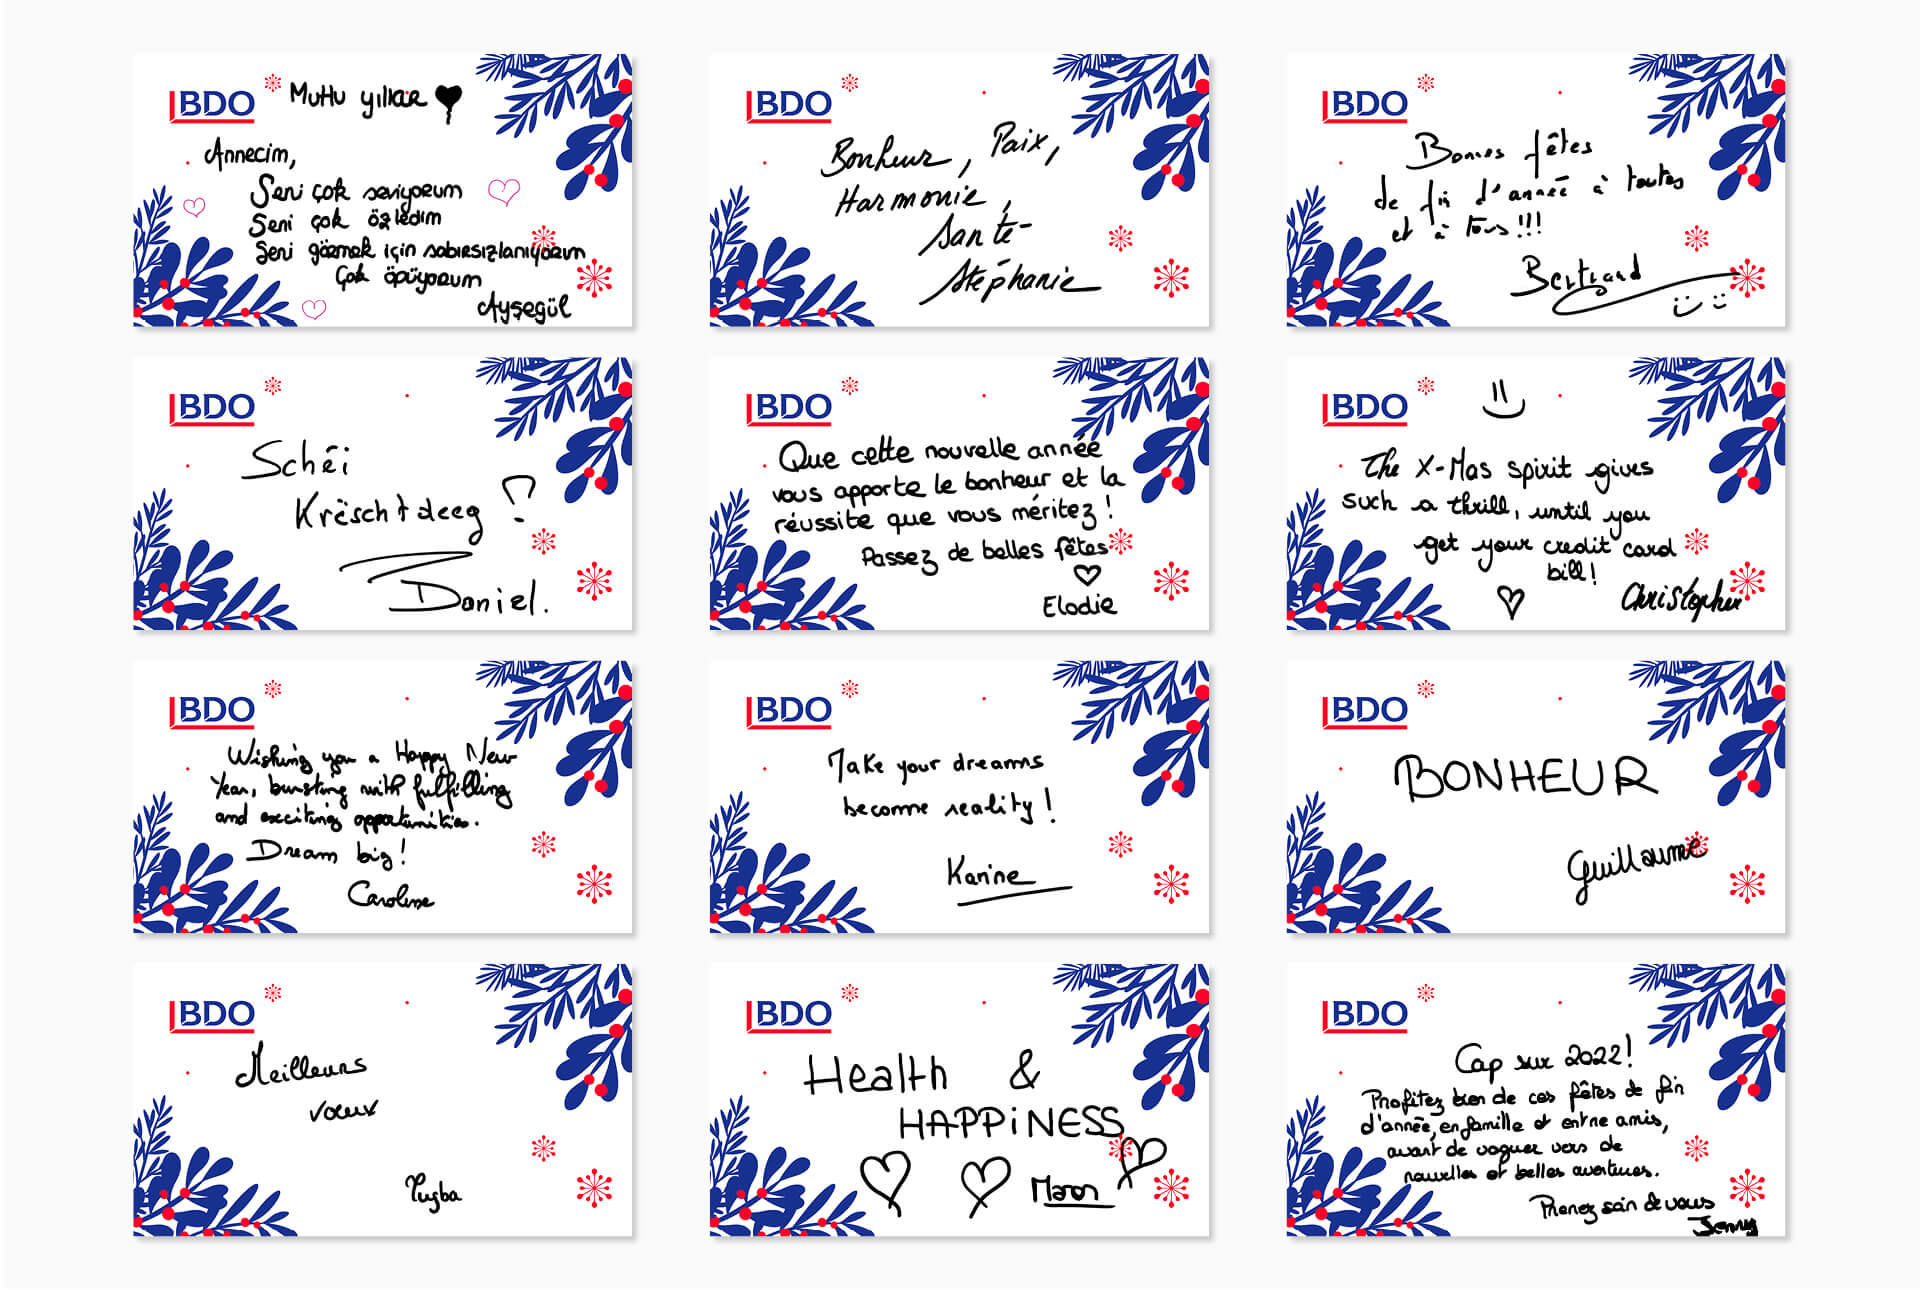 Cartes de vœux écrites par les collaborateurs de BDO pour leurs clients